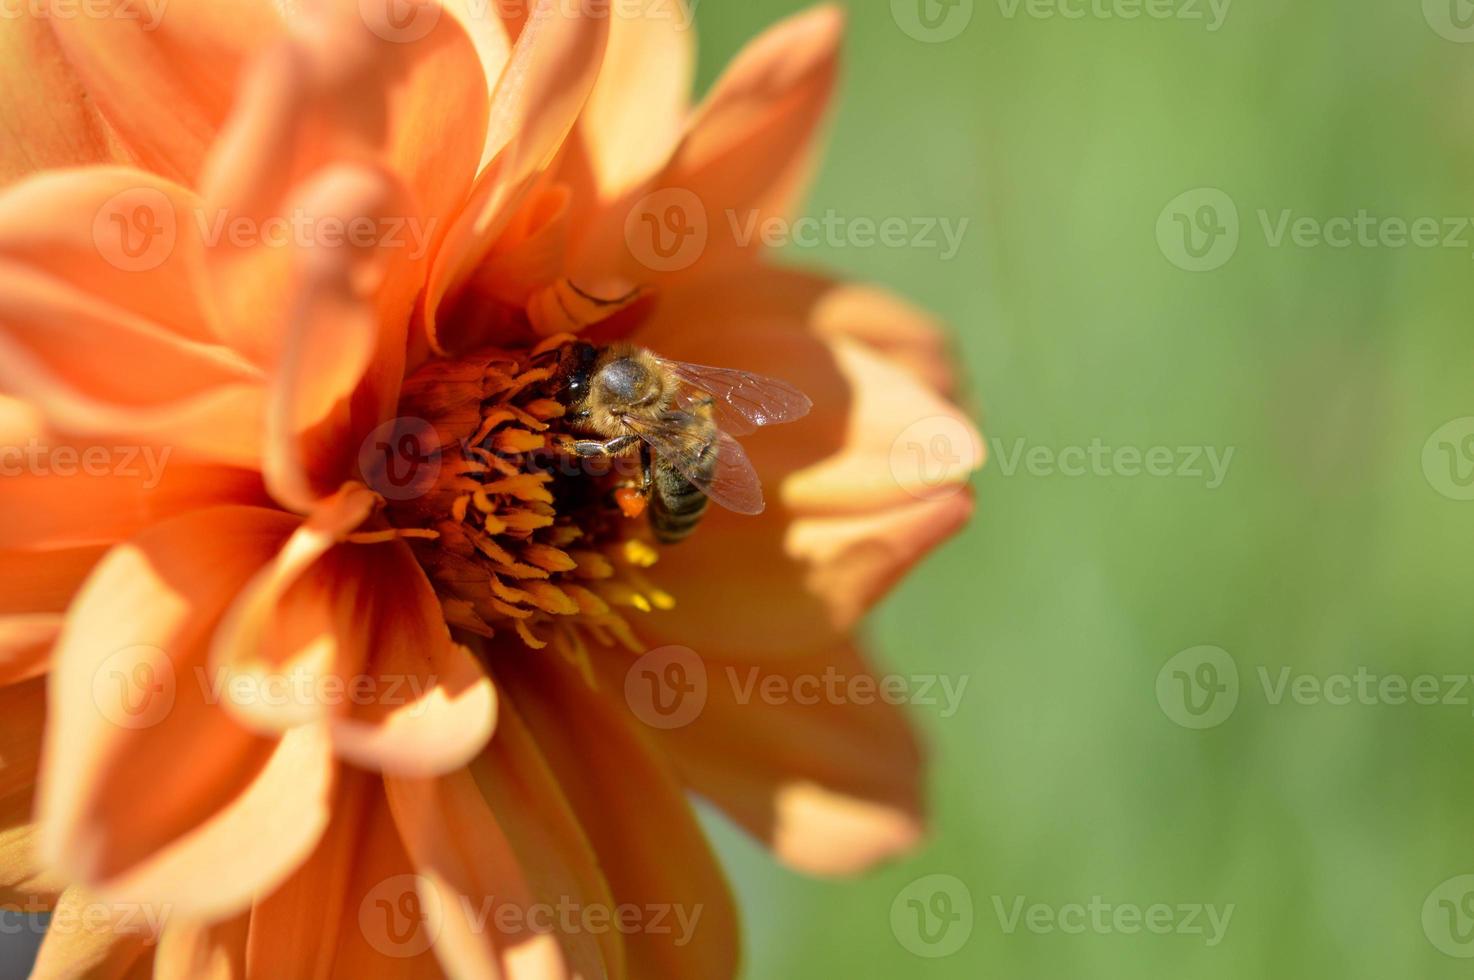 abelha dentro de uma flor dália laranja trabalhando, close-up macro. foto